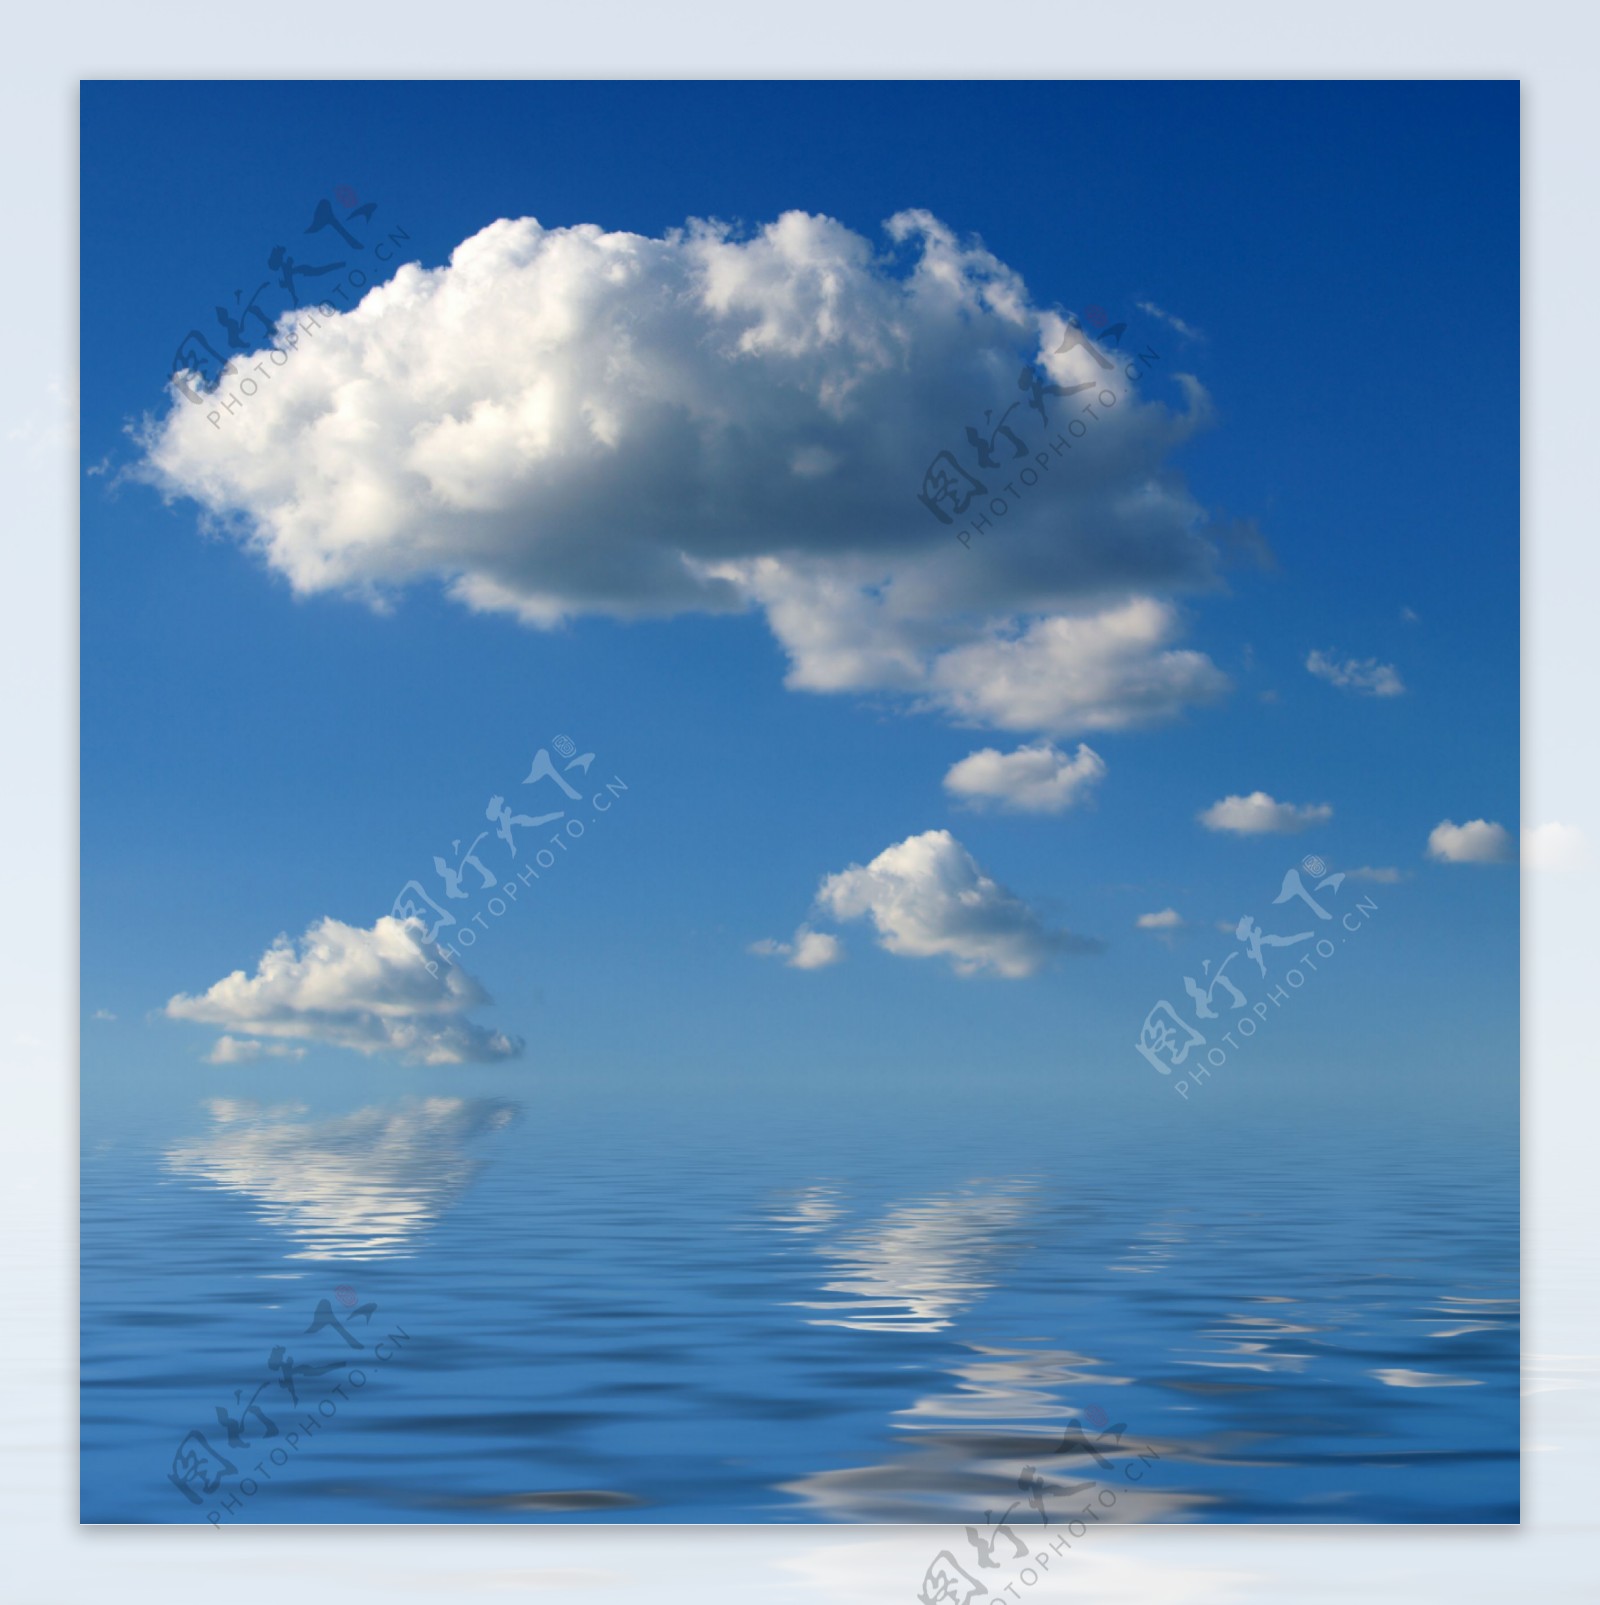 倒映水面的白云图片